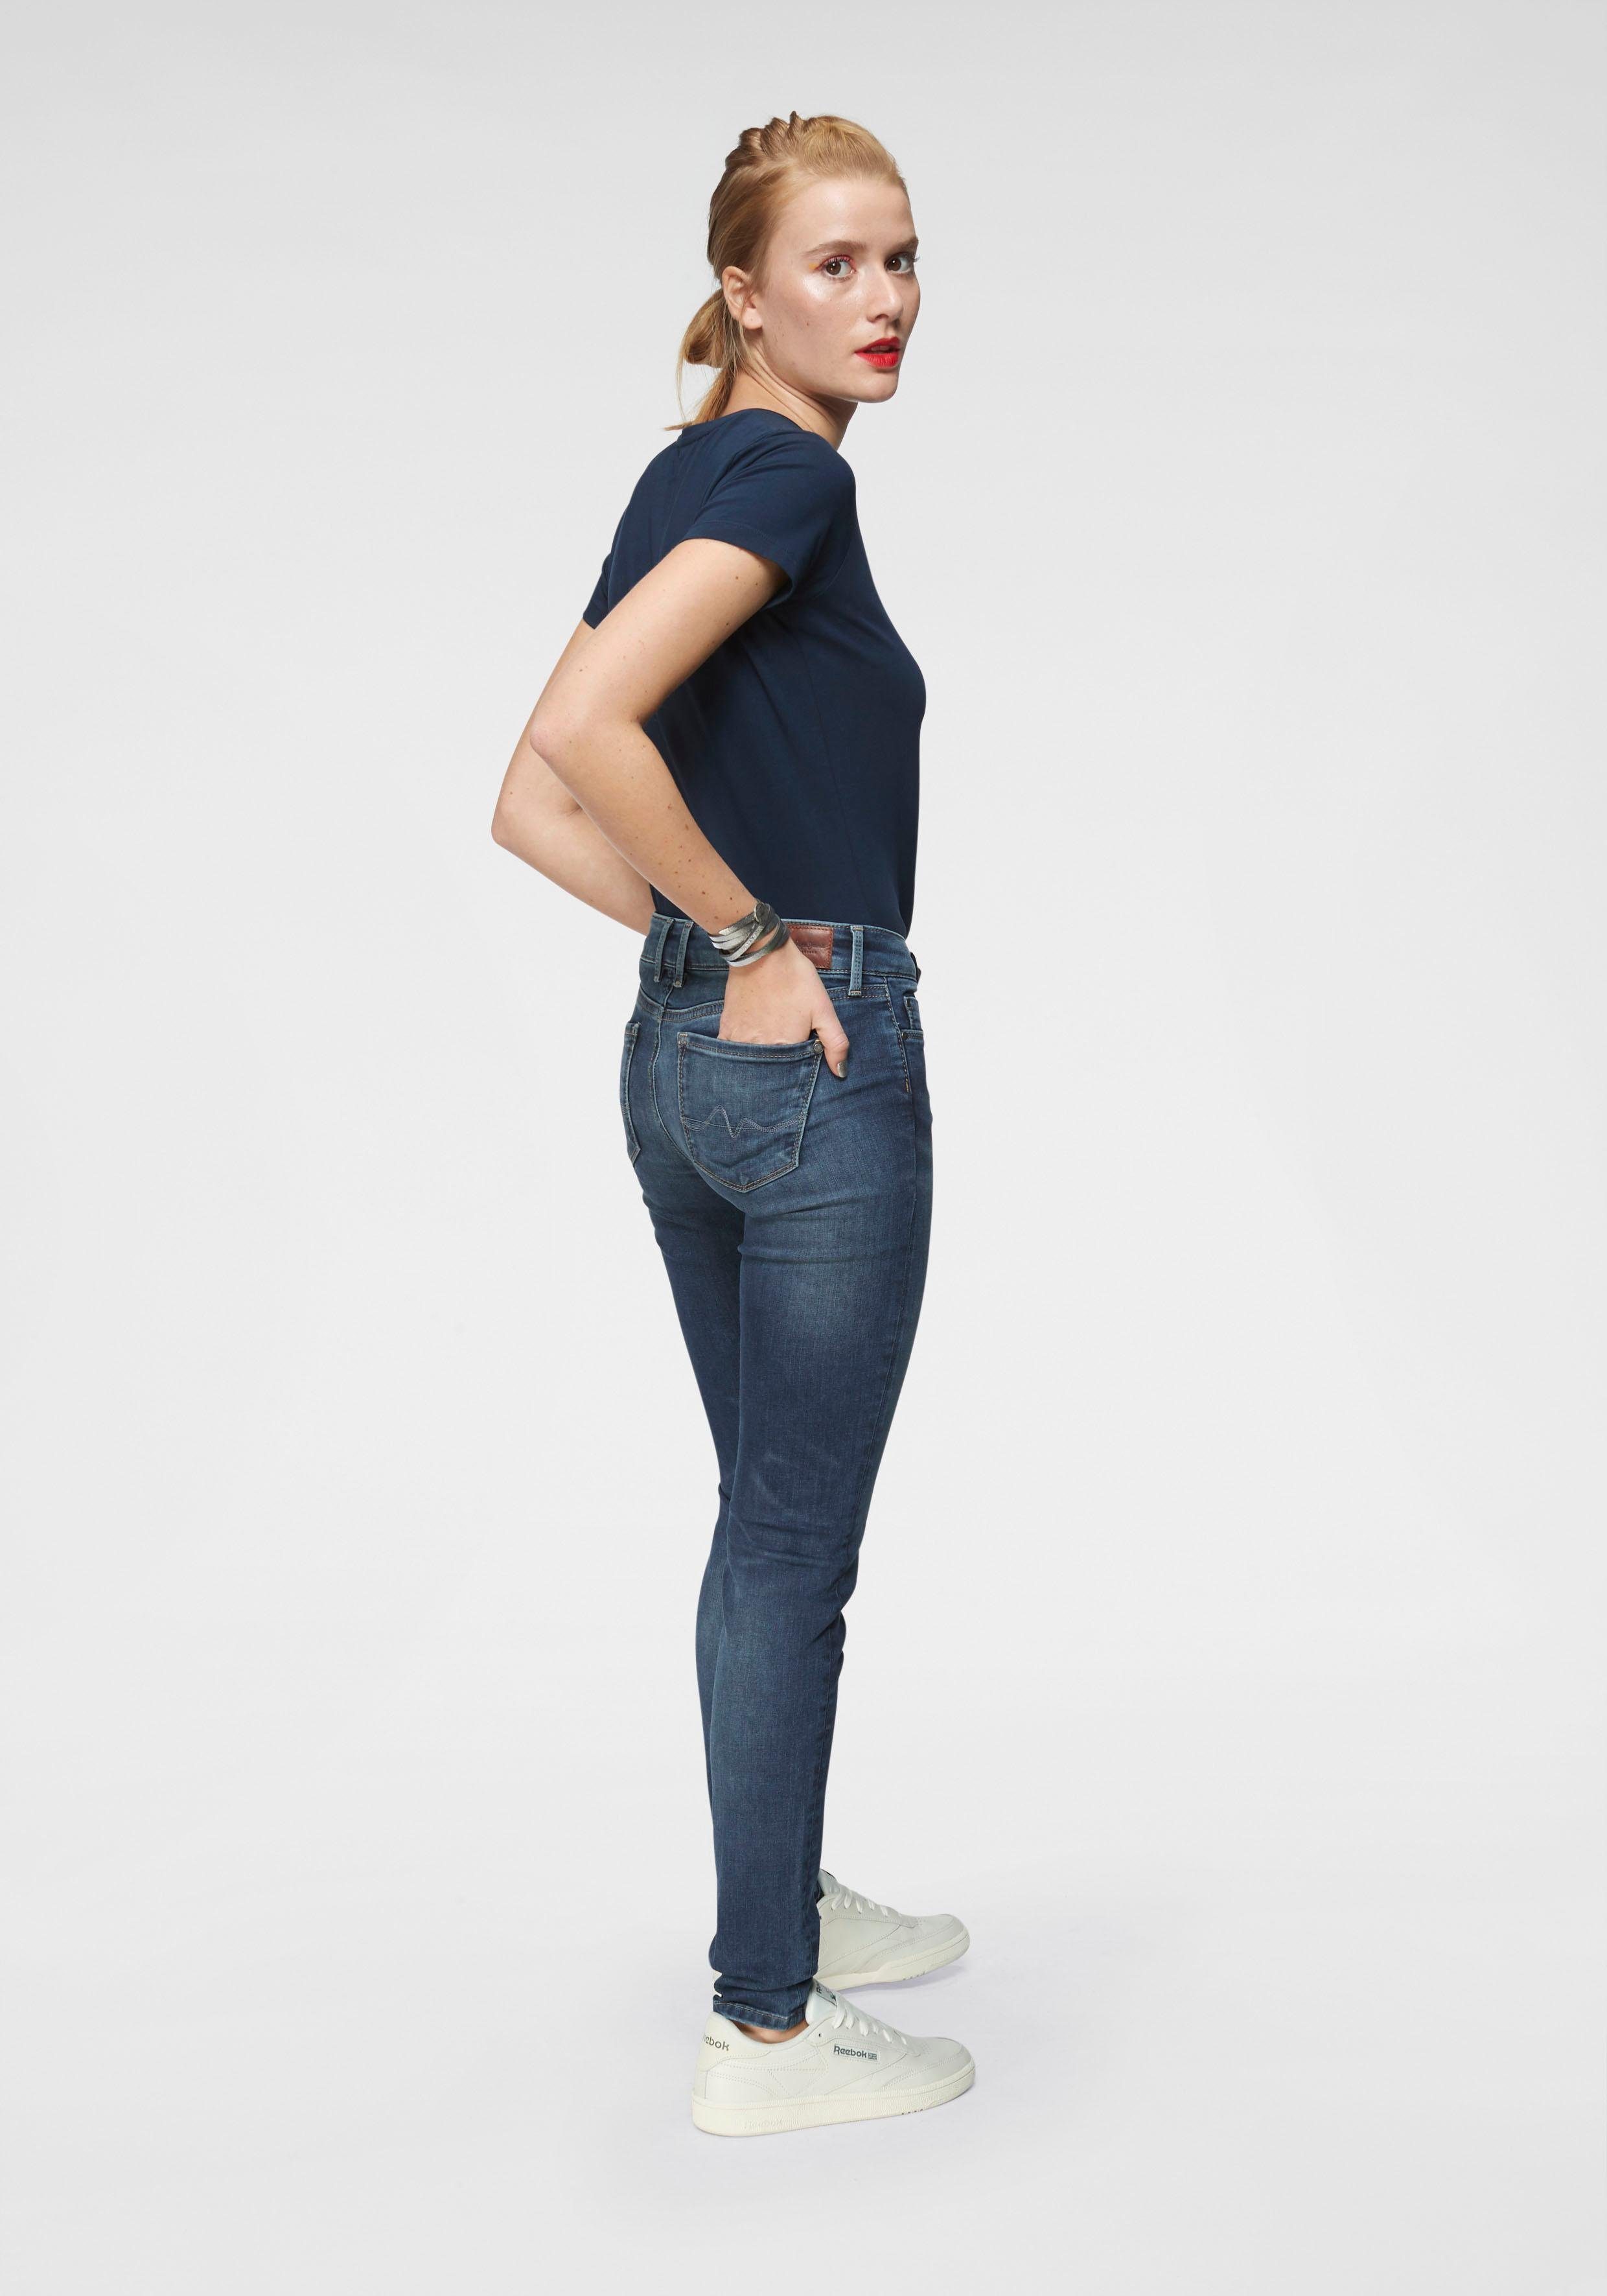 im Z63 Jeans Skinny-fit-Jeans SOHO Stretch-Anteil 5-Pocket-Stil 1-Knopf Bund stretch classic und Pepe mit